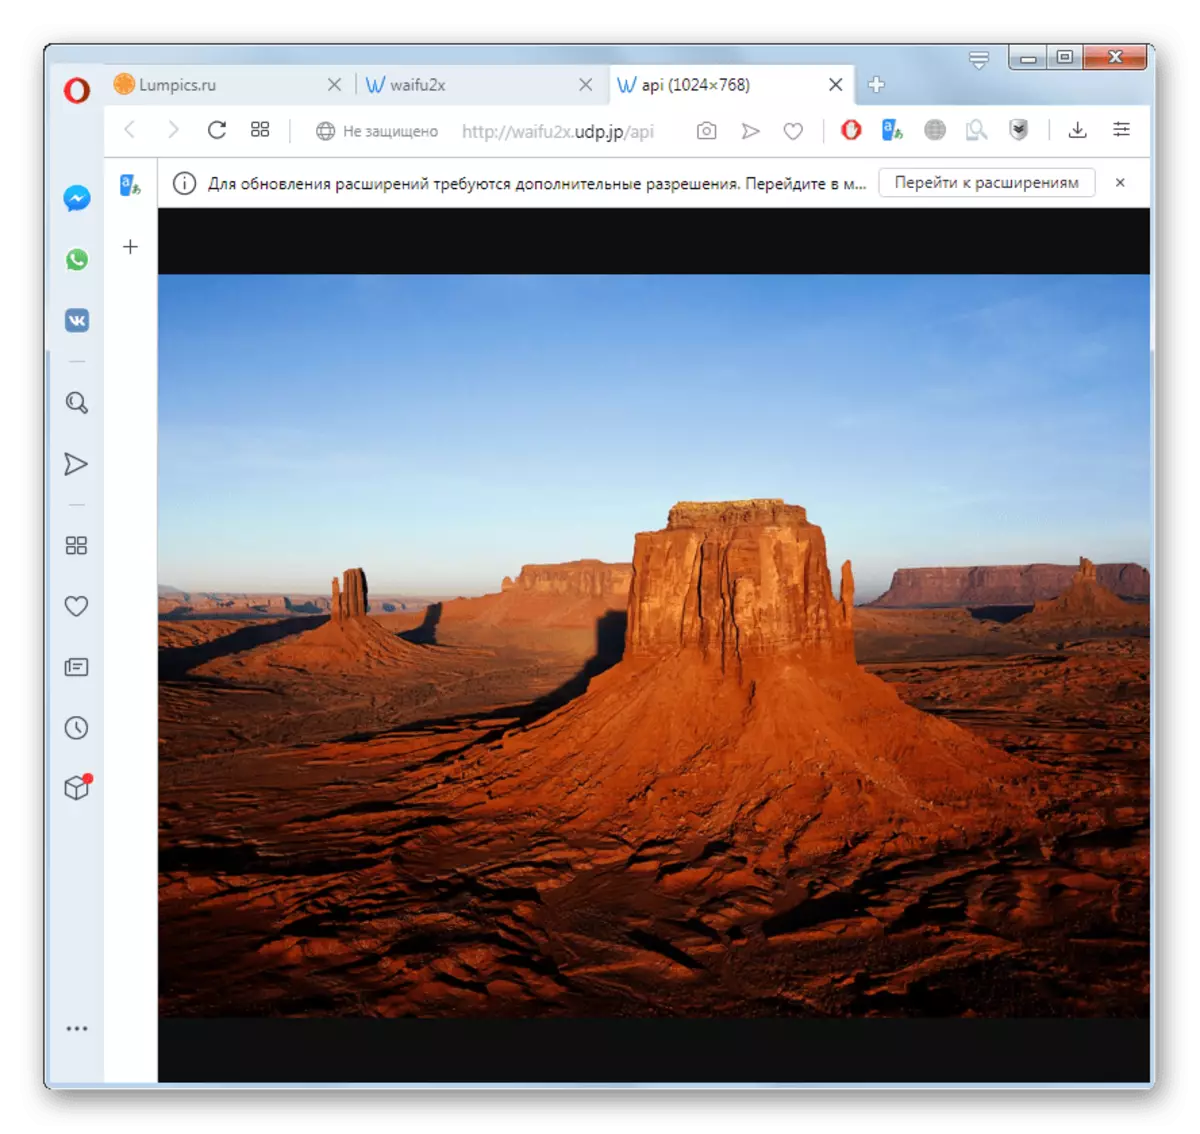 Перетворене зображення відкрилося на сервісі Waifu2x в новій вкладці браузера Opera